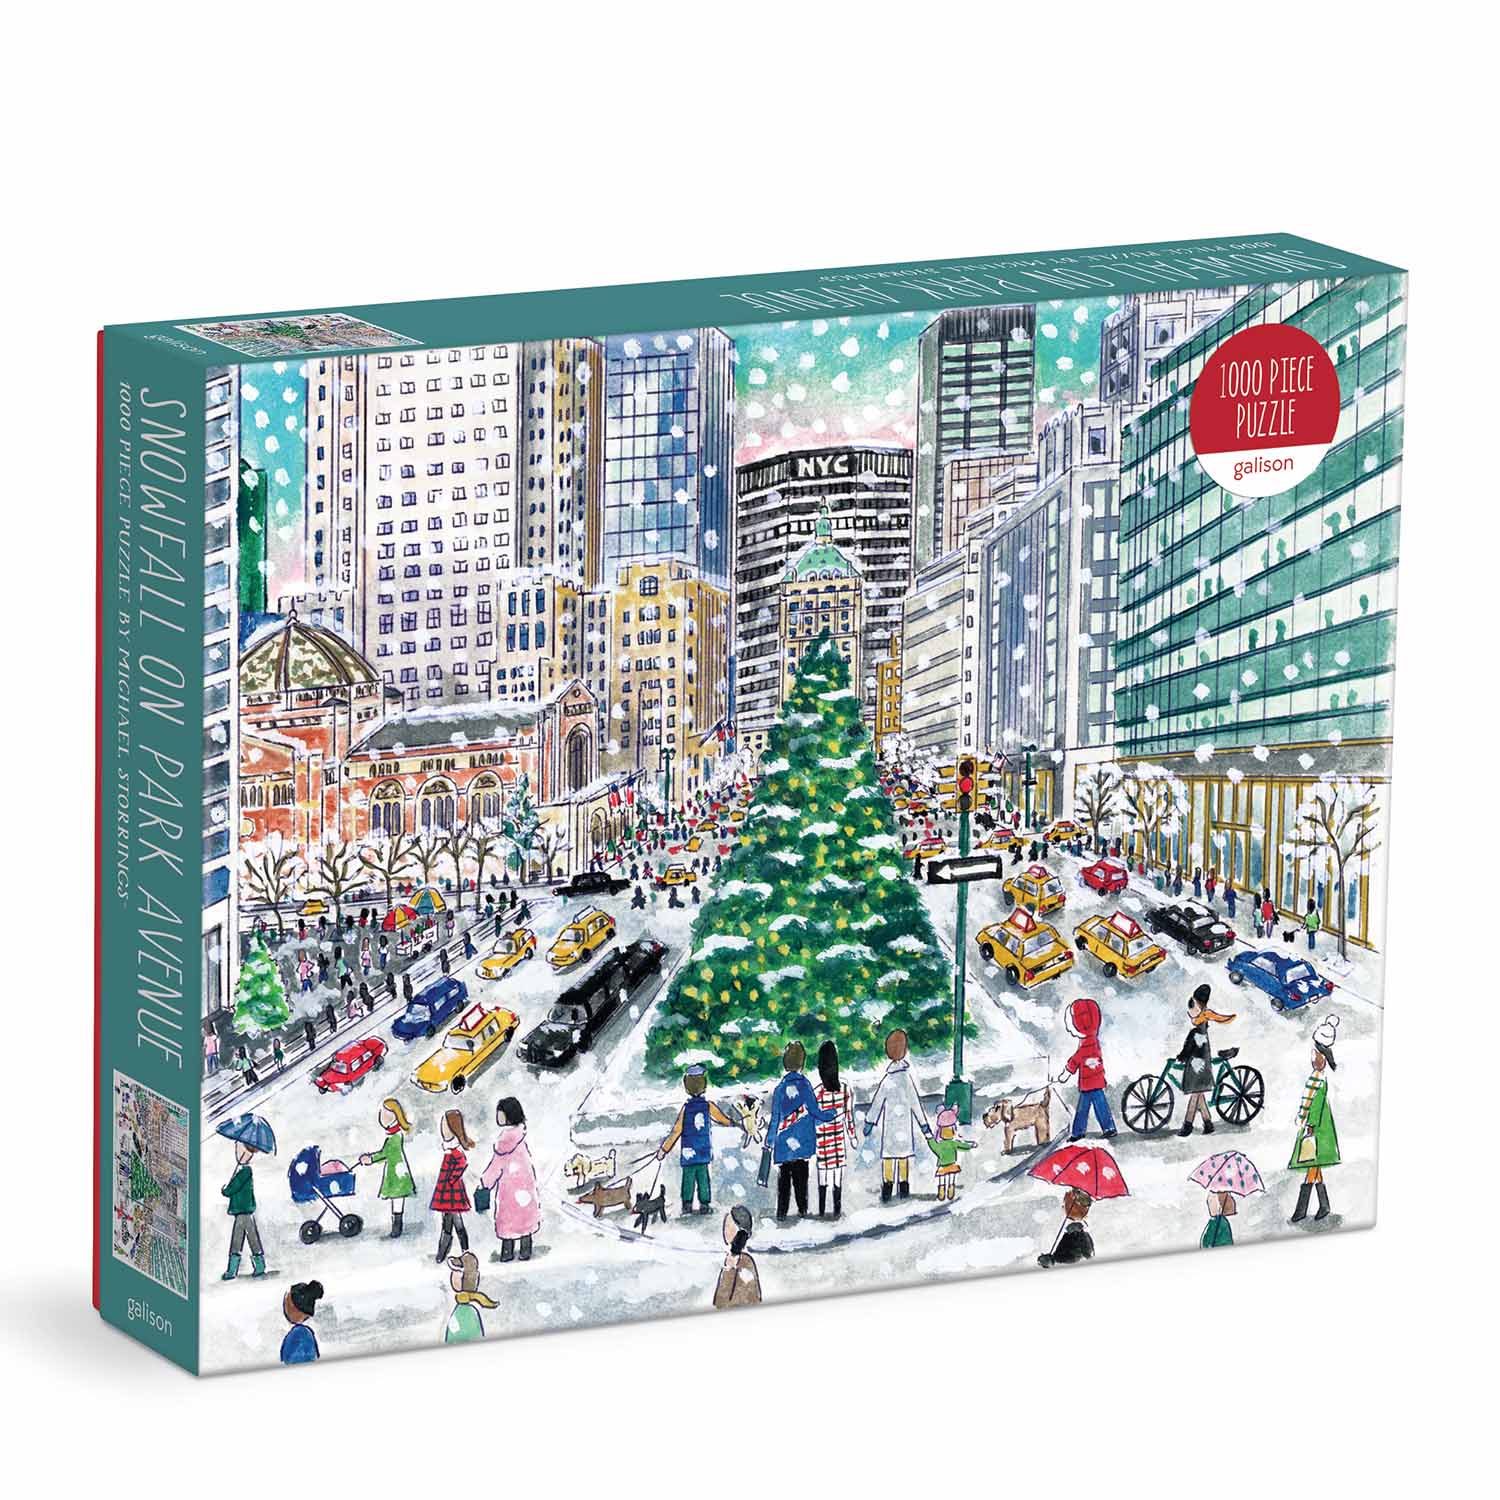 Snowfall on Park Avenue Christmas Jigsaw Puzzle